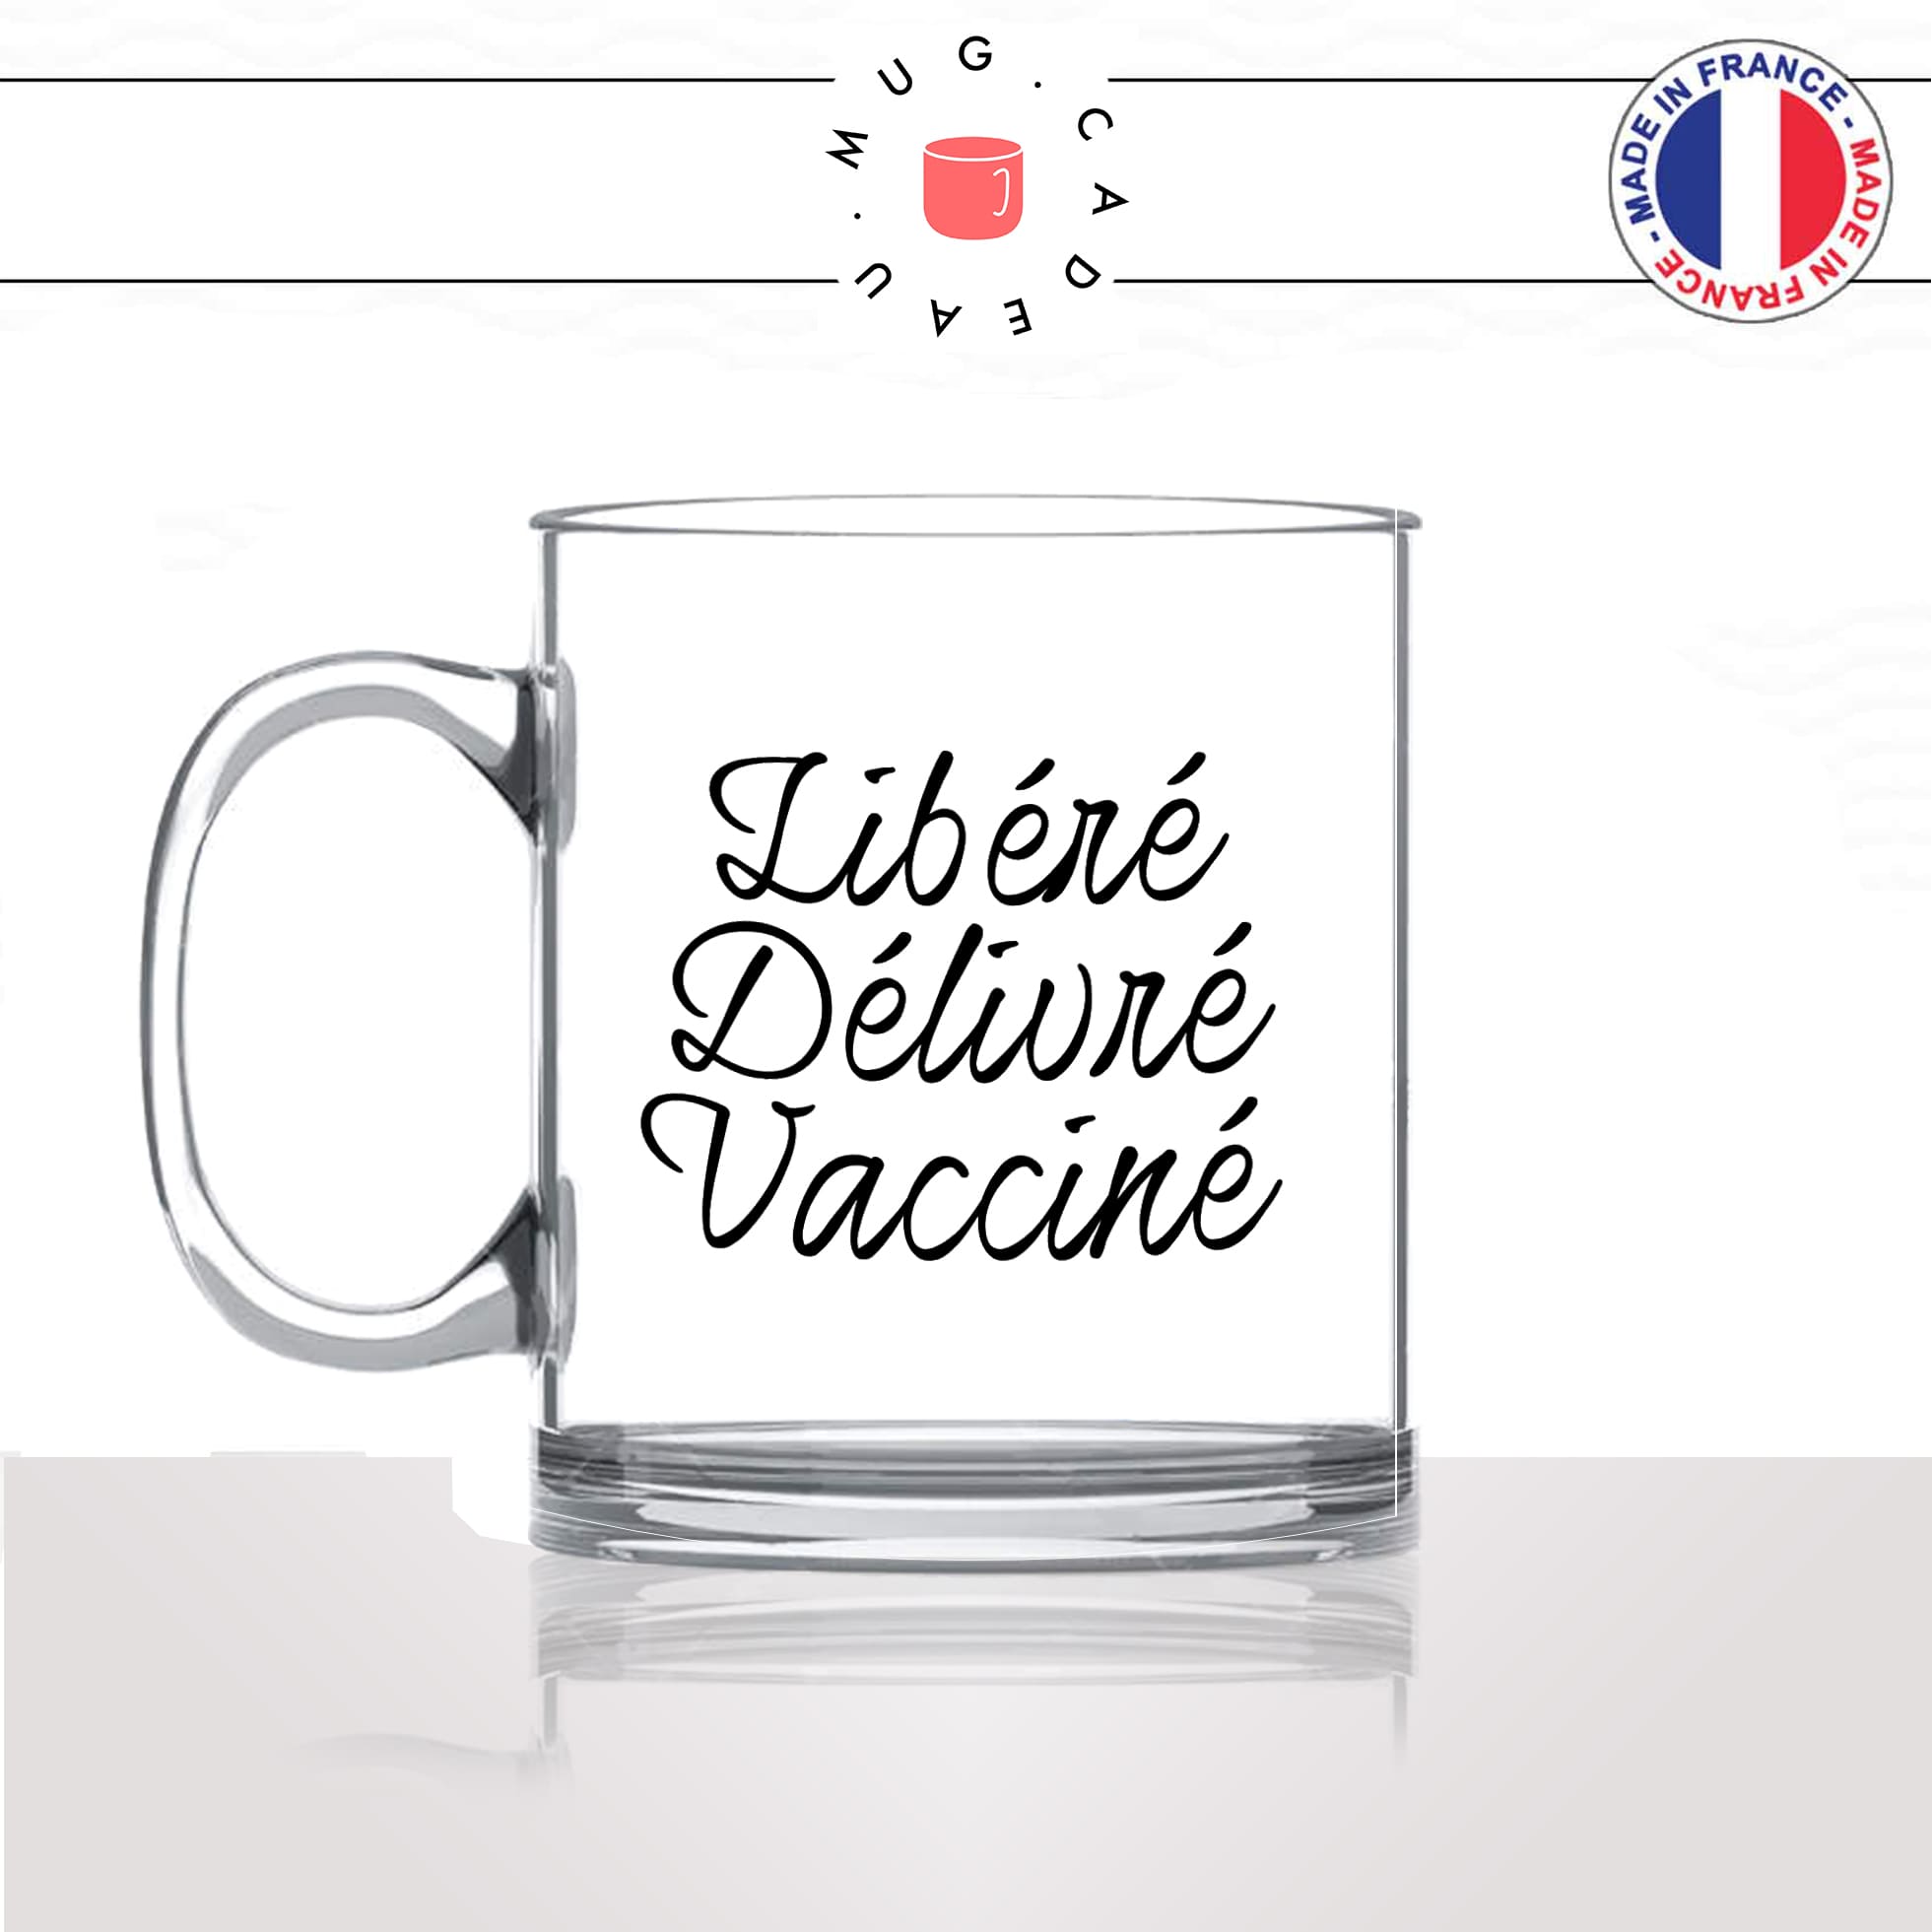 mug-tasse-en-verre-transparent-glass-libéré-délivré-vacciné-vaccination-covid-homme-femme-parodie-humour-fun-cool-idée-cadeau-original